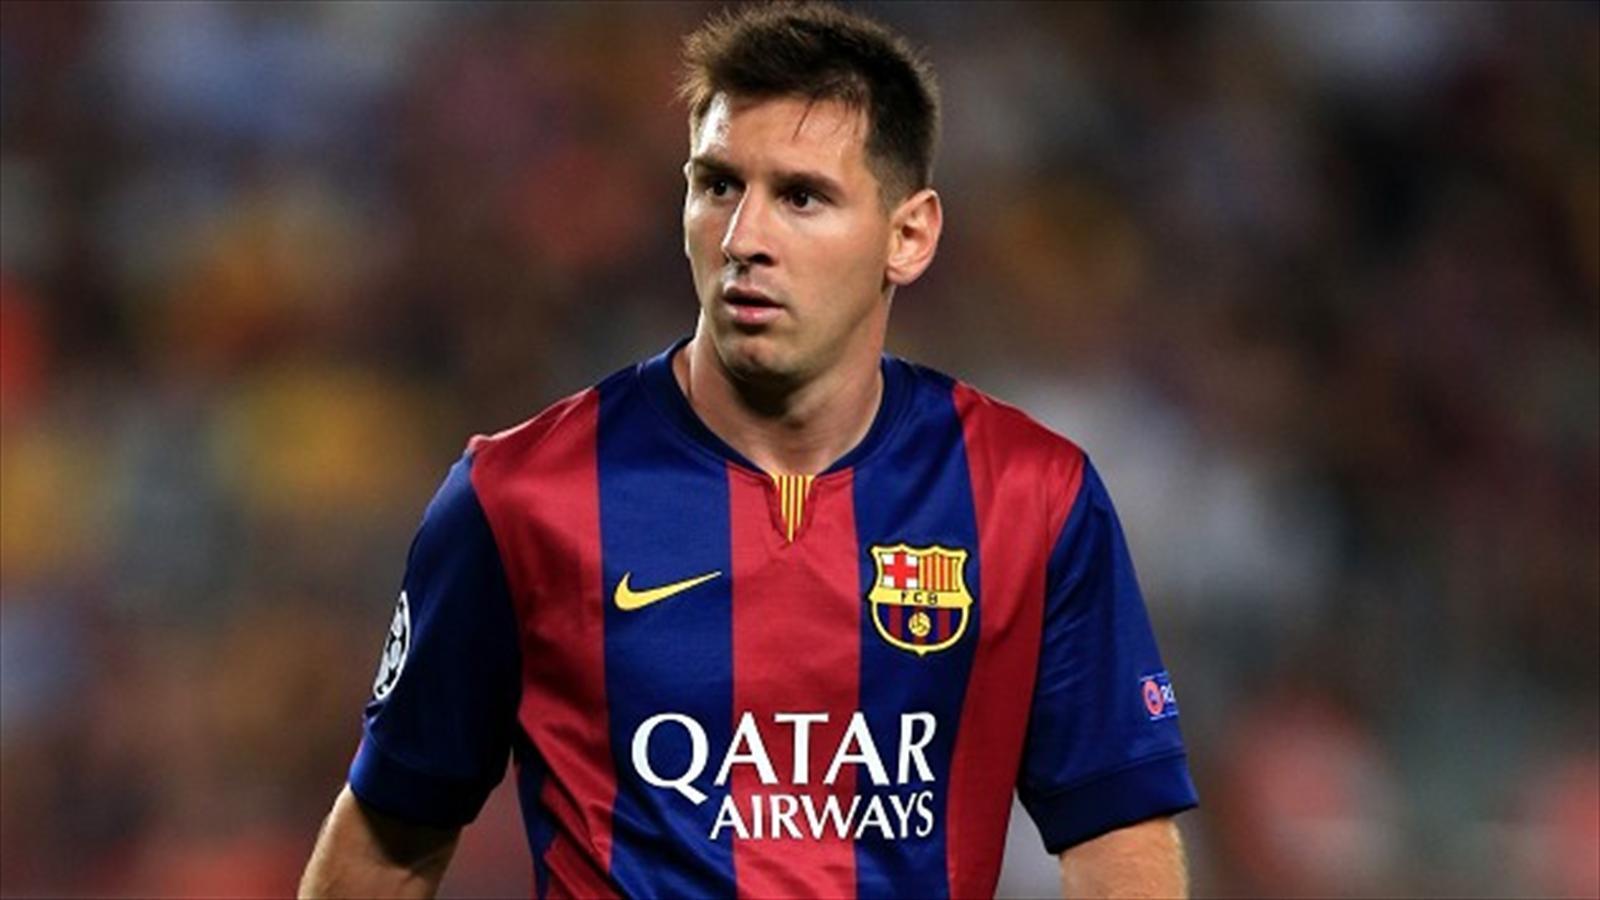 Messi Barcelona 2015 HD Picture 4 HD Wallpaper. F. C. Barcelona